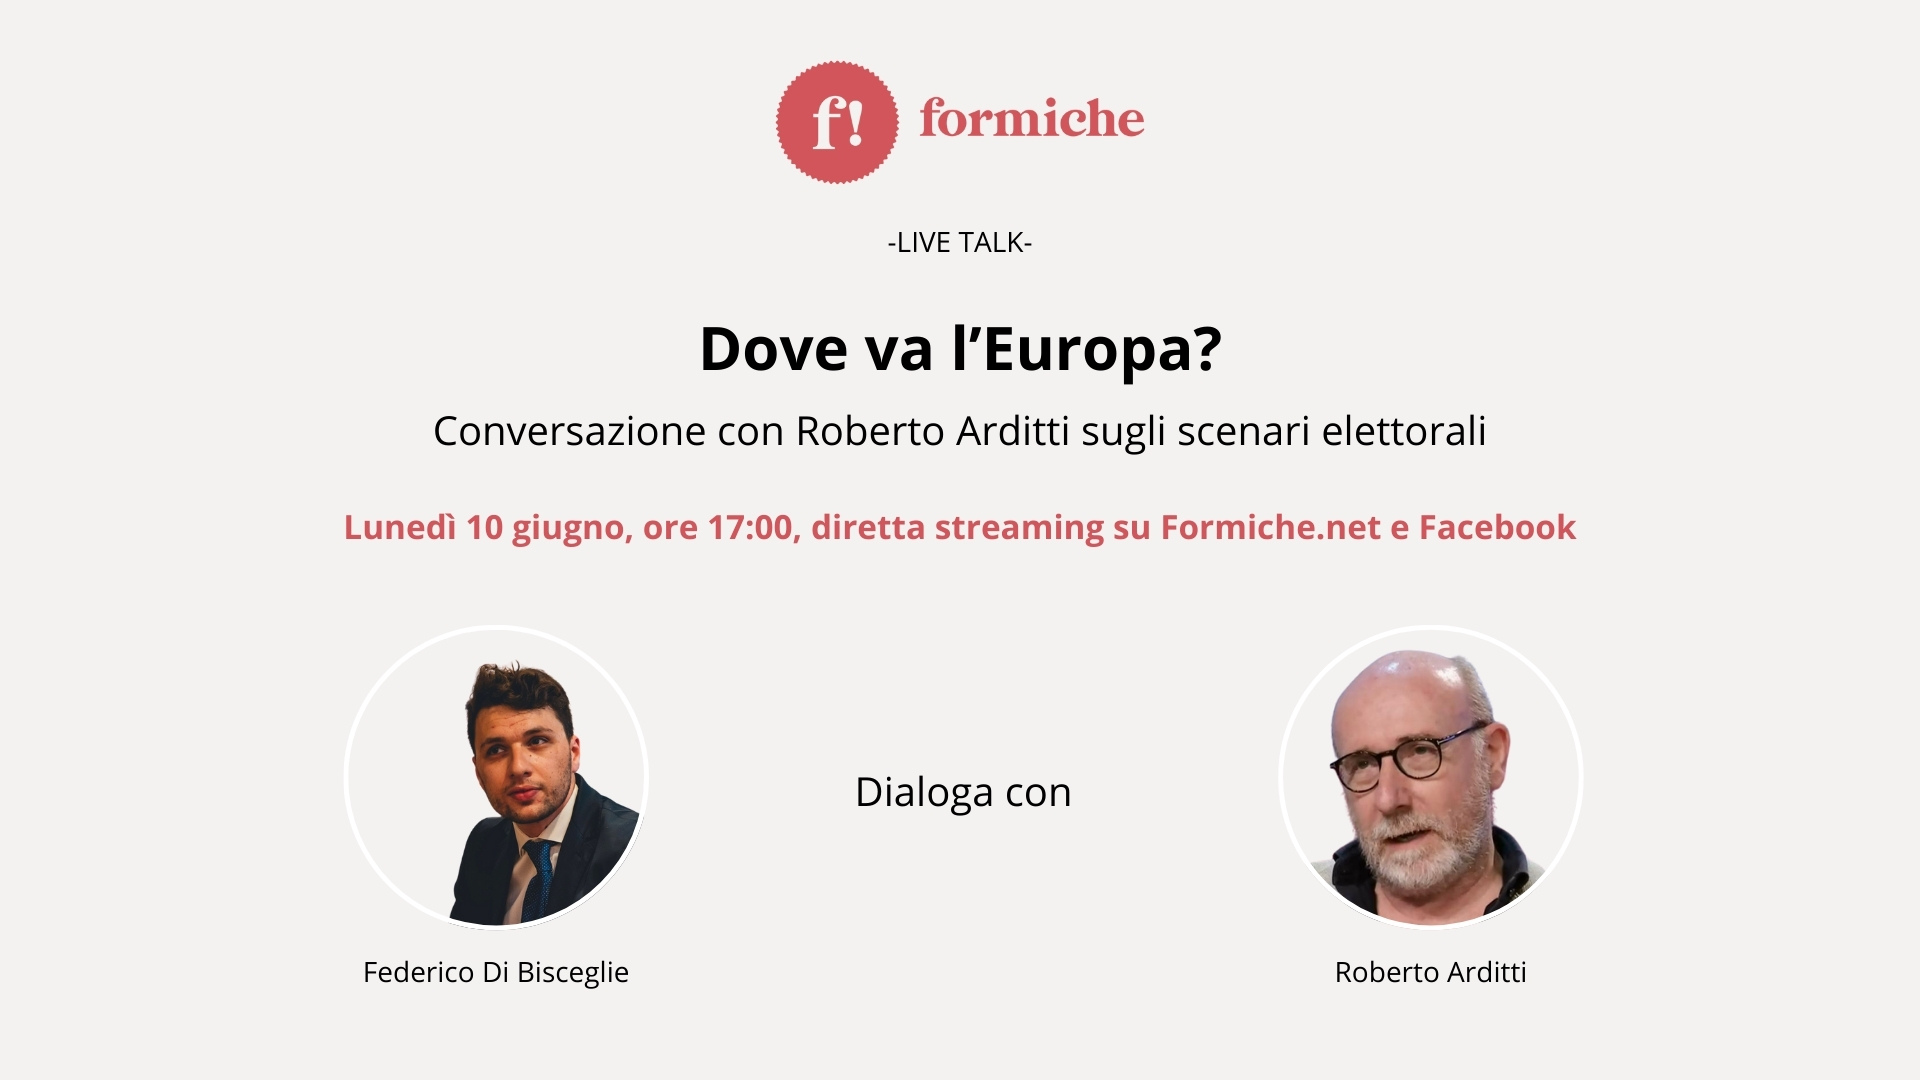 Live Talk – Dove va l’Europa? Conversazione con Roberto Arditti sugli scenari post elettorali